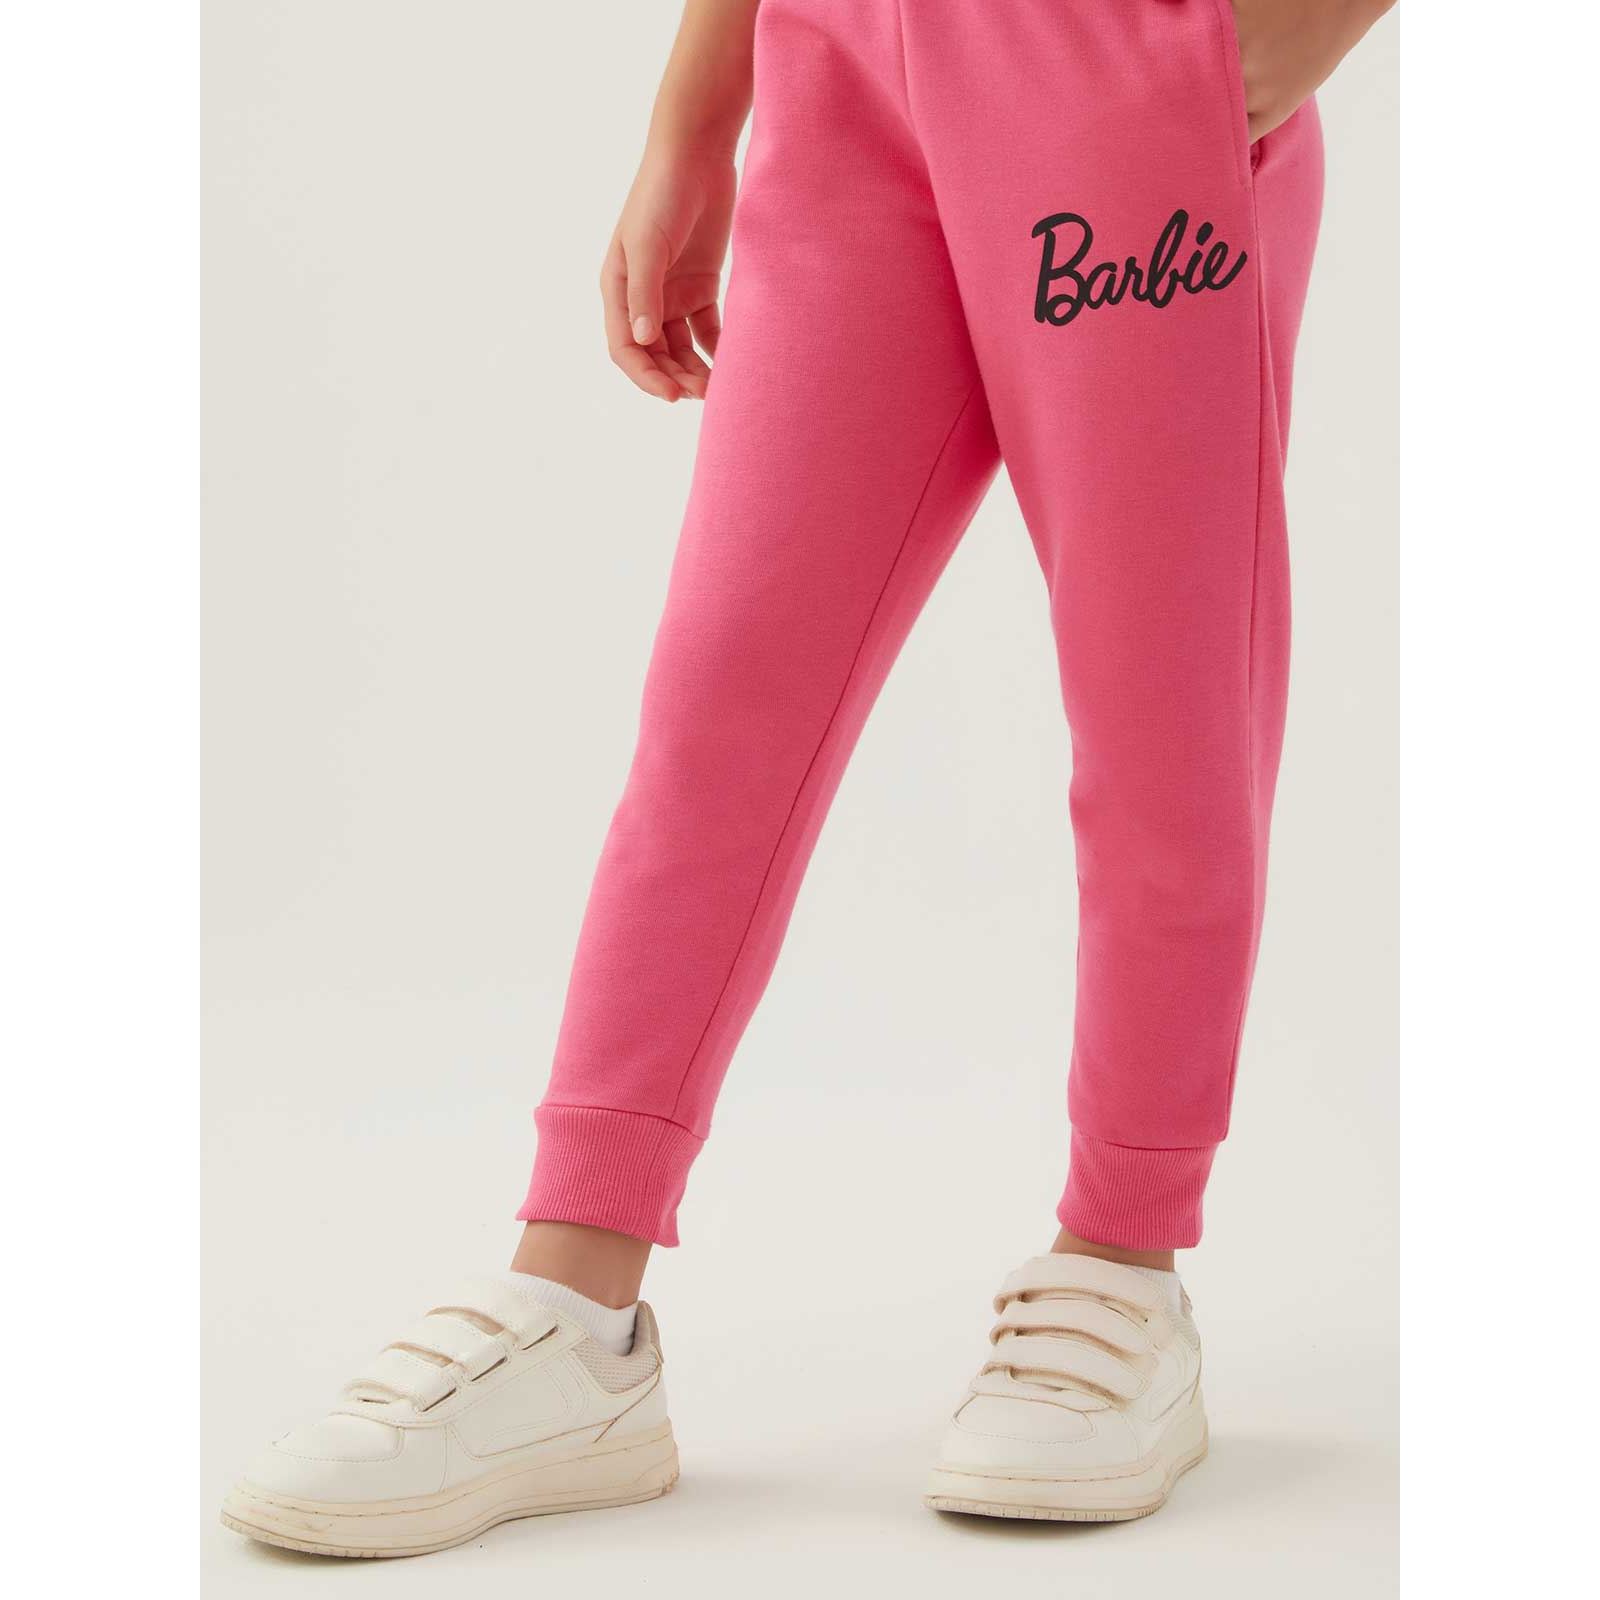 Barbie Kız Çocuk Eşofman Altı 9-14 Yaş Açık Fuşya